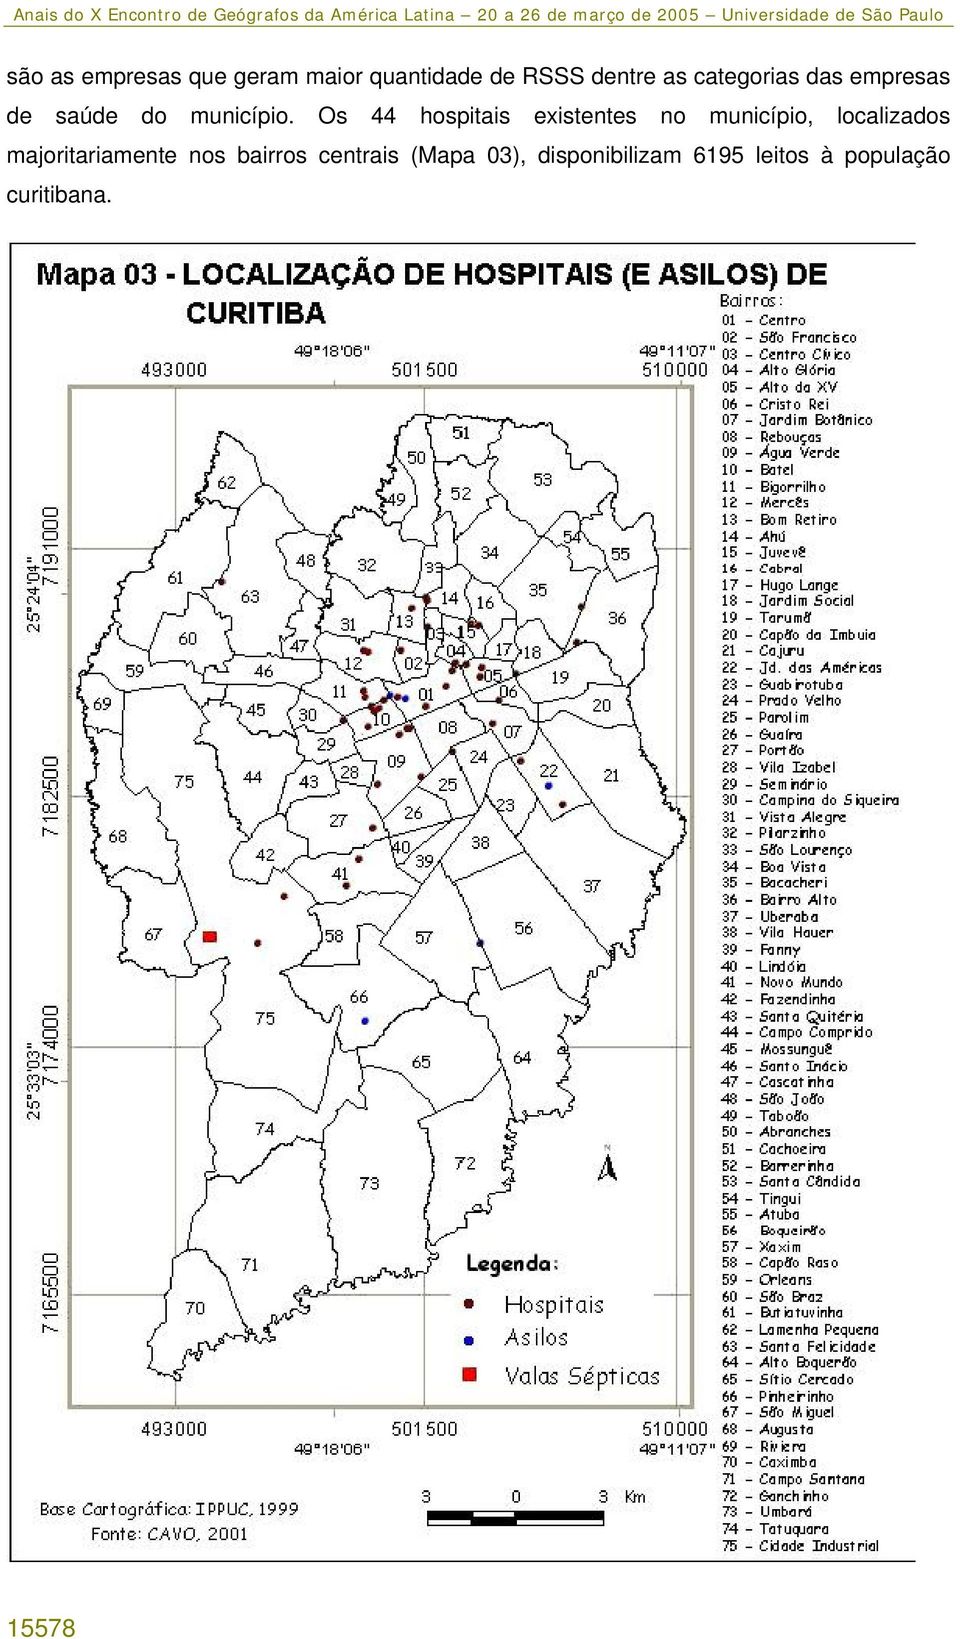 Os 44 hospitais existentes no município, localizados